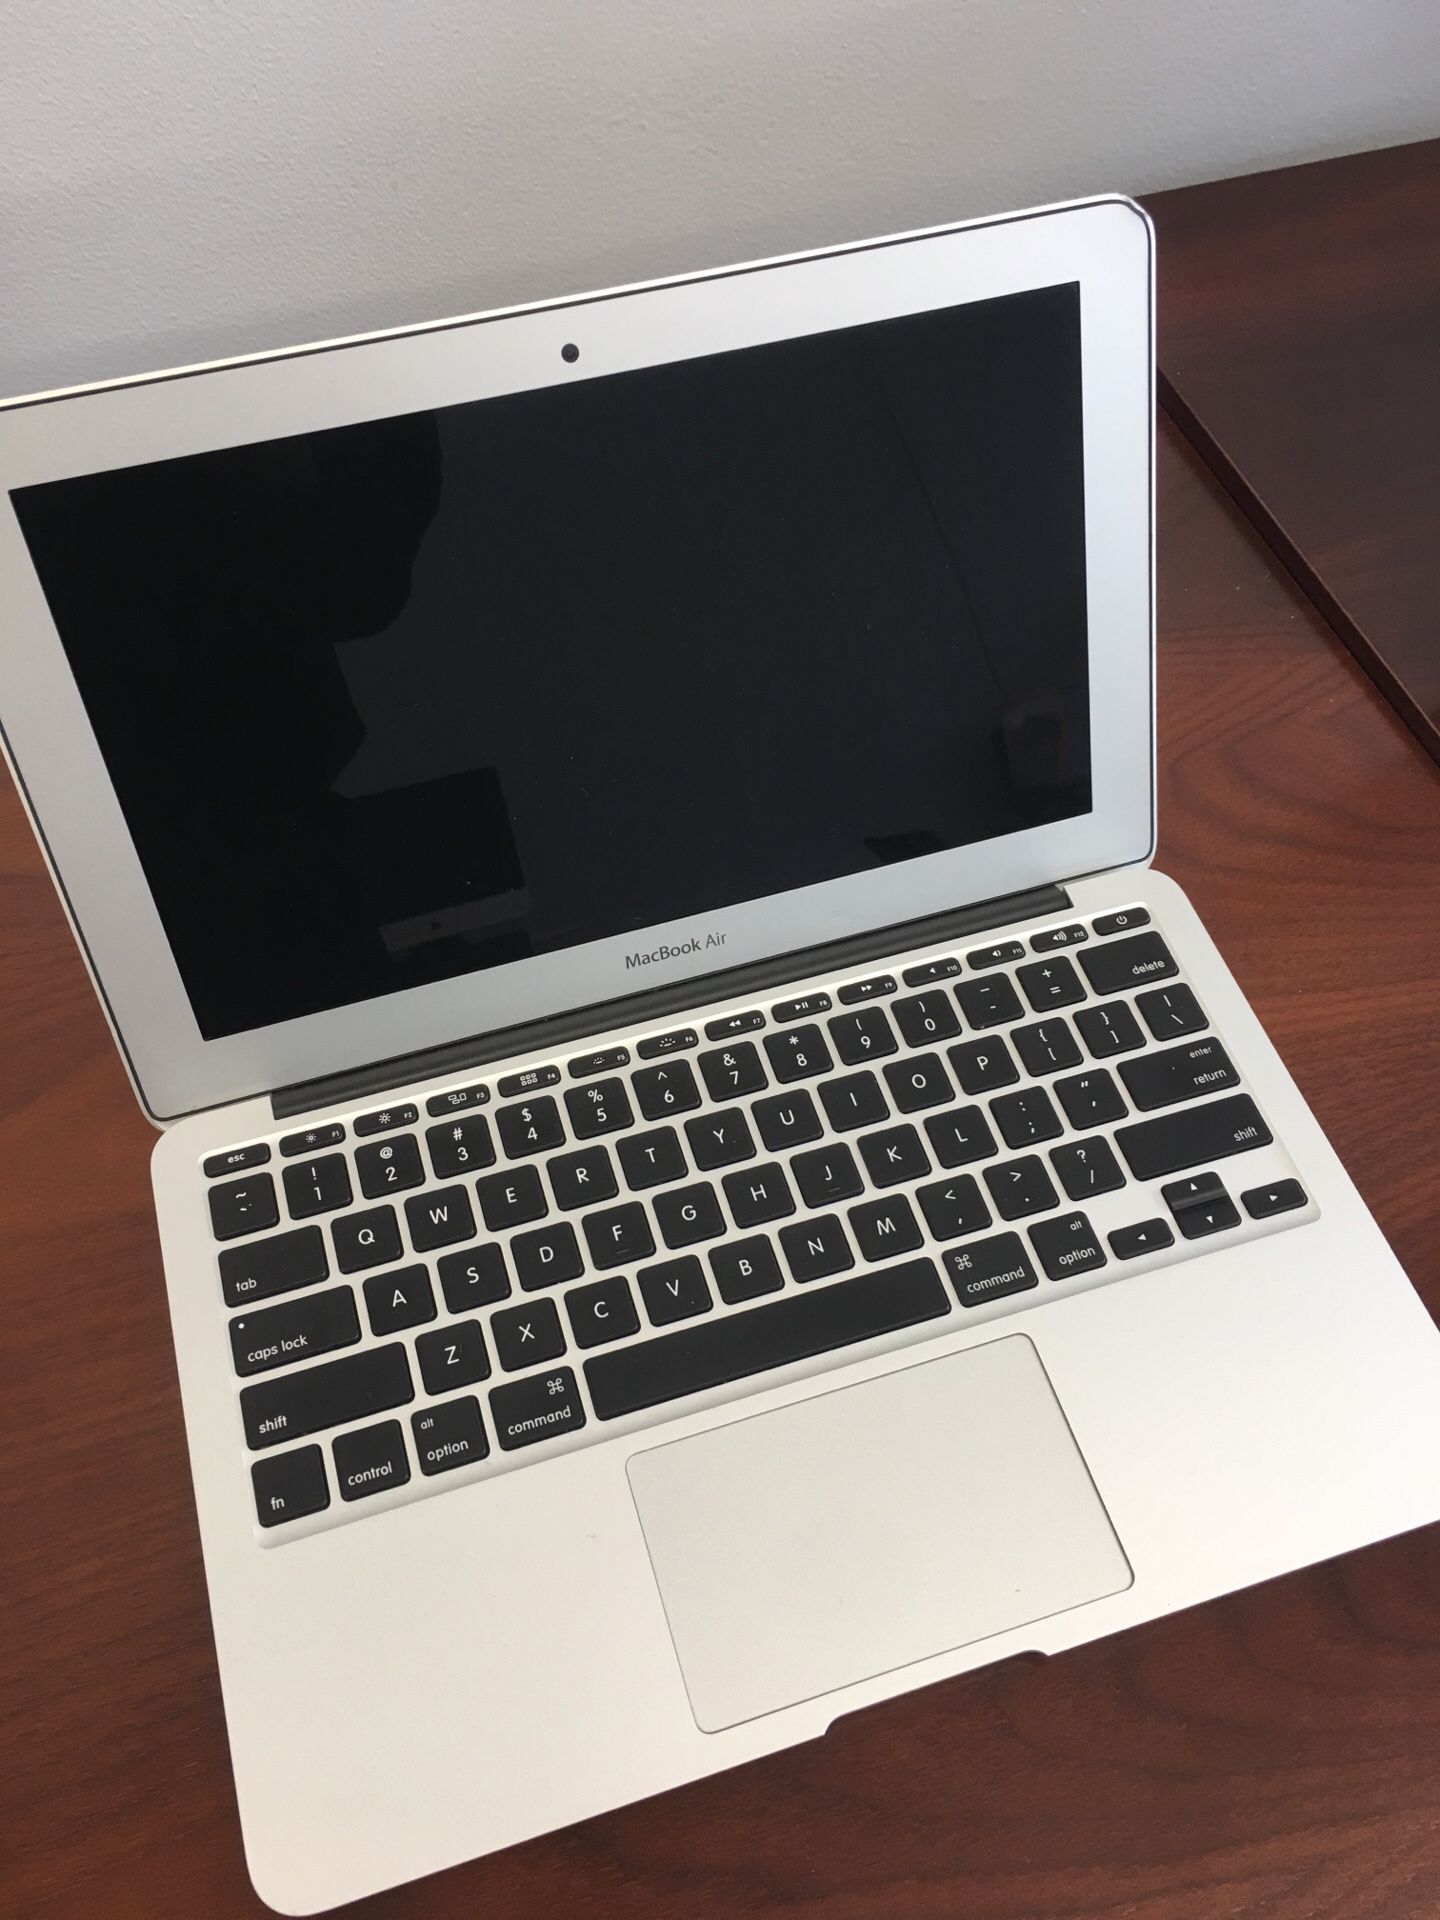 MacBook Air 11’ 1.4 GHz, i5, 4GB, 128GB SSD